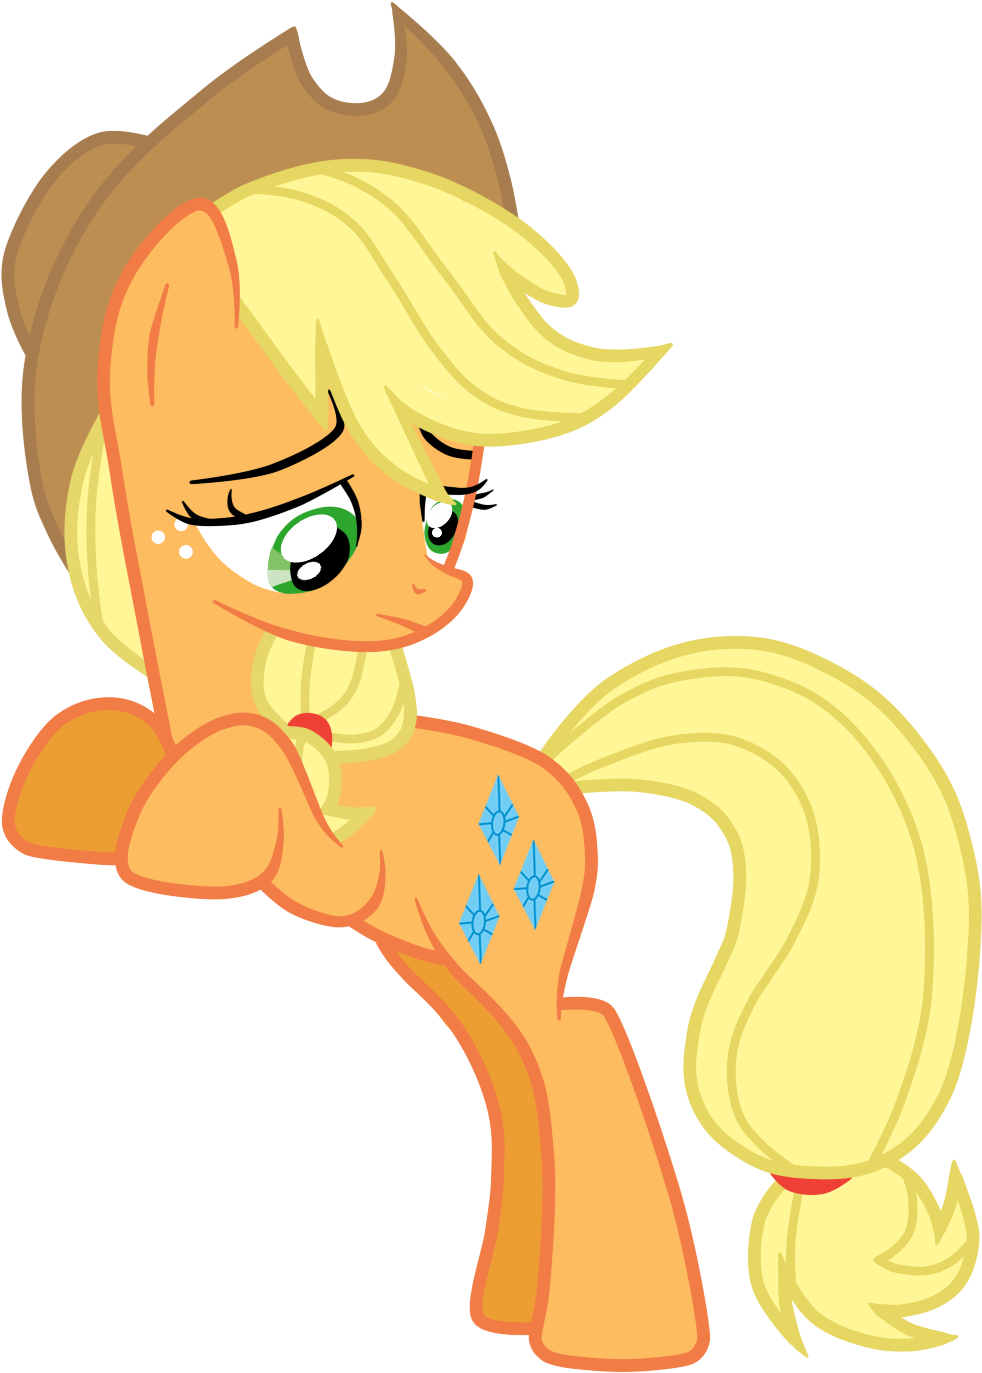 [apple Jack] It's Got To Be My Destiny By Theodoresfan - My Little Pony What My Cutie Mark (1400x1400)